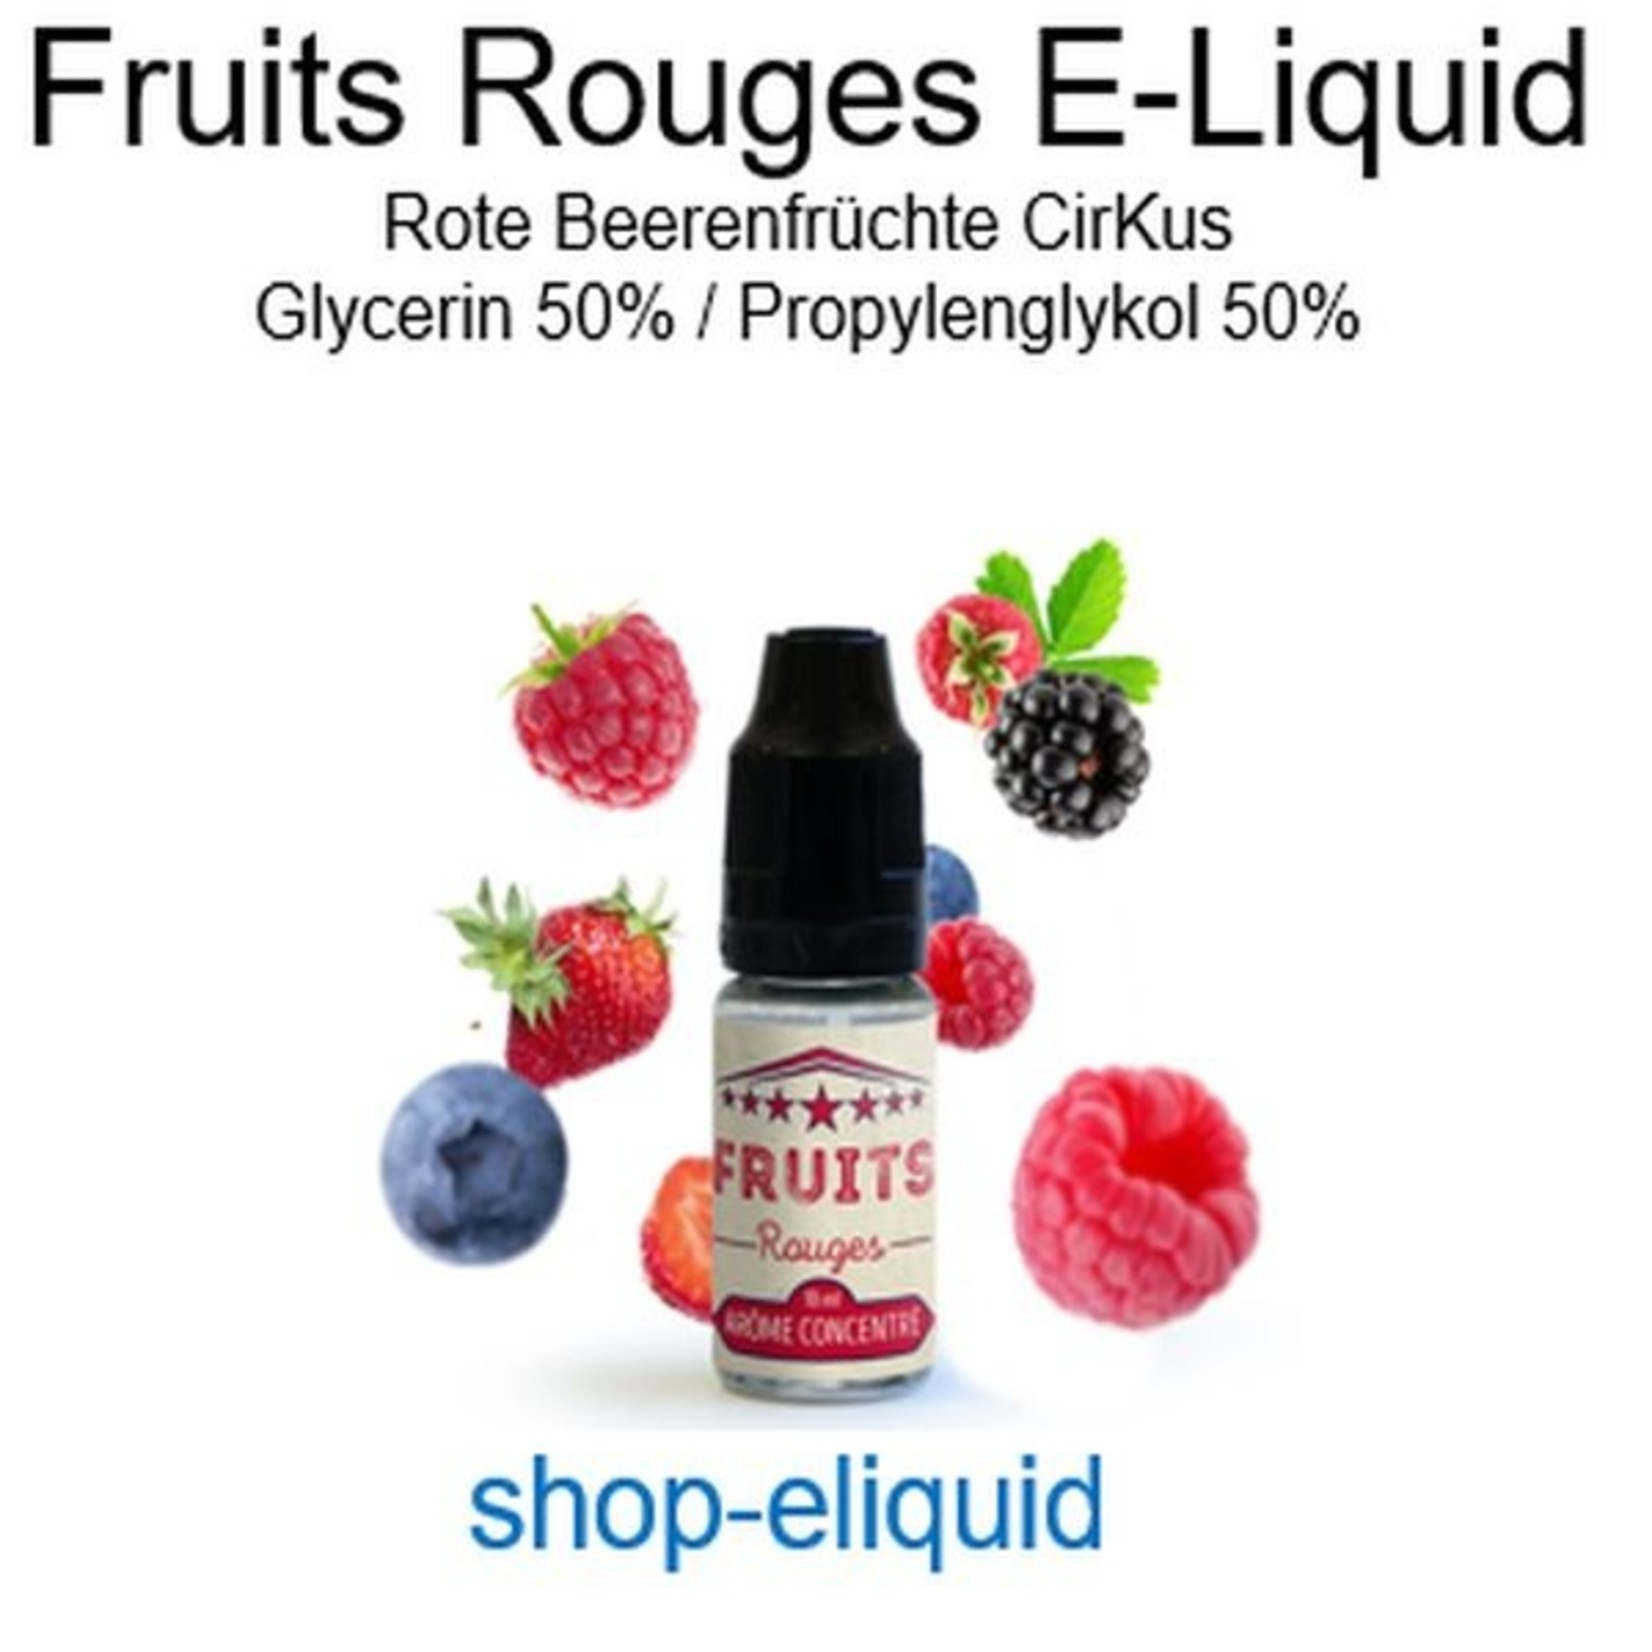 shop-eliquid Fruits Rouges Rote Beerenfrüchte E-Liquid